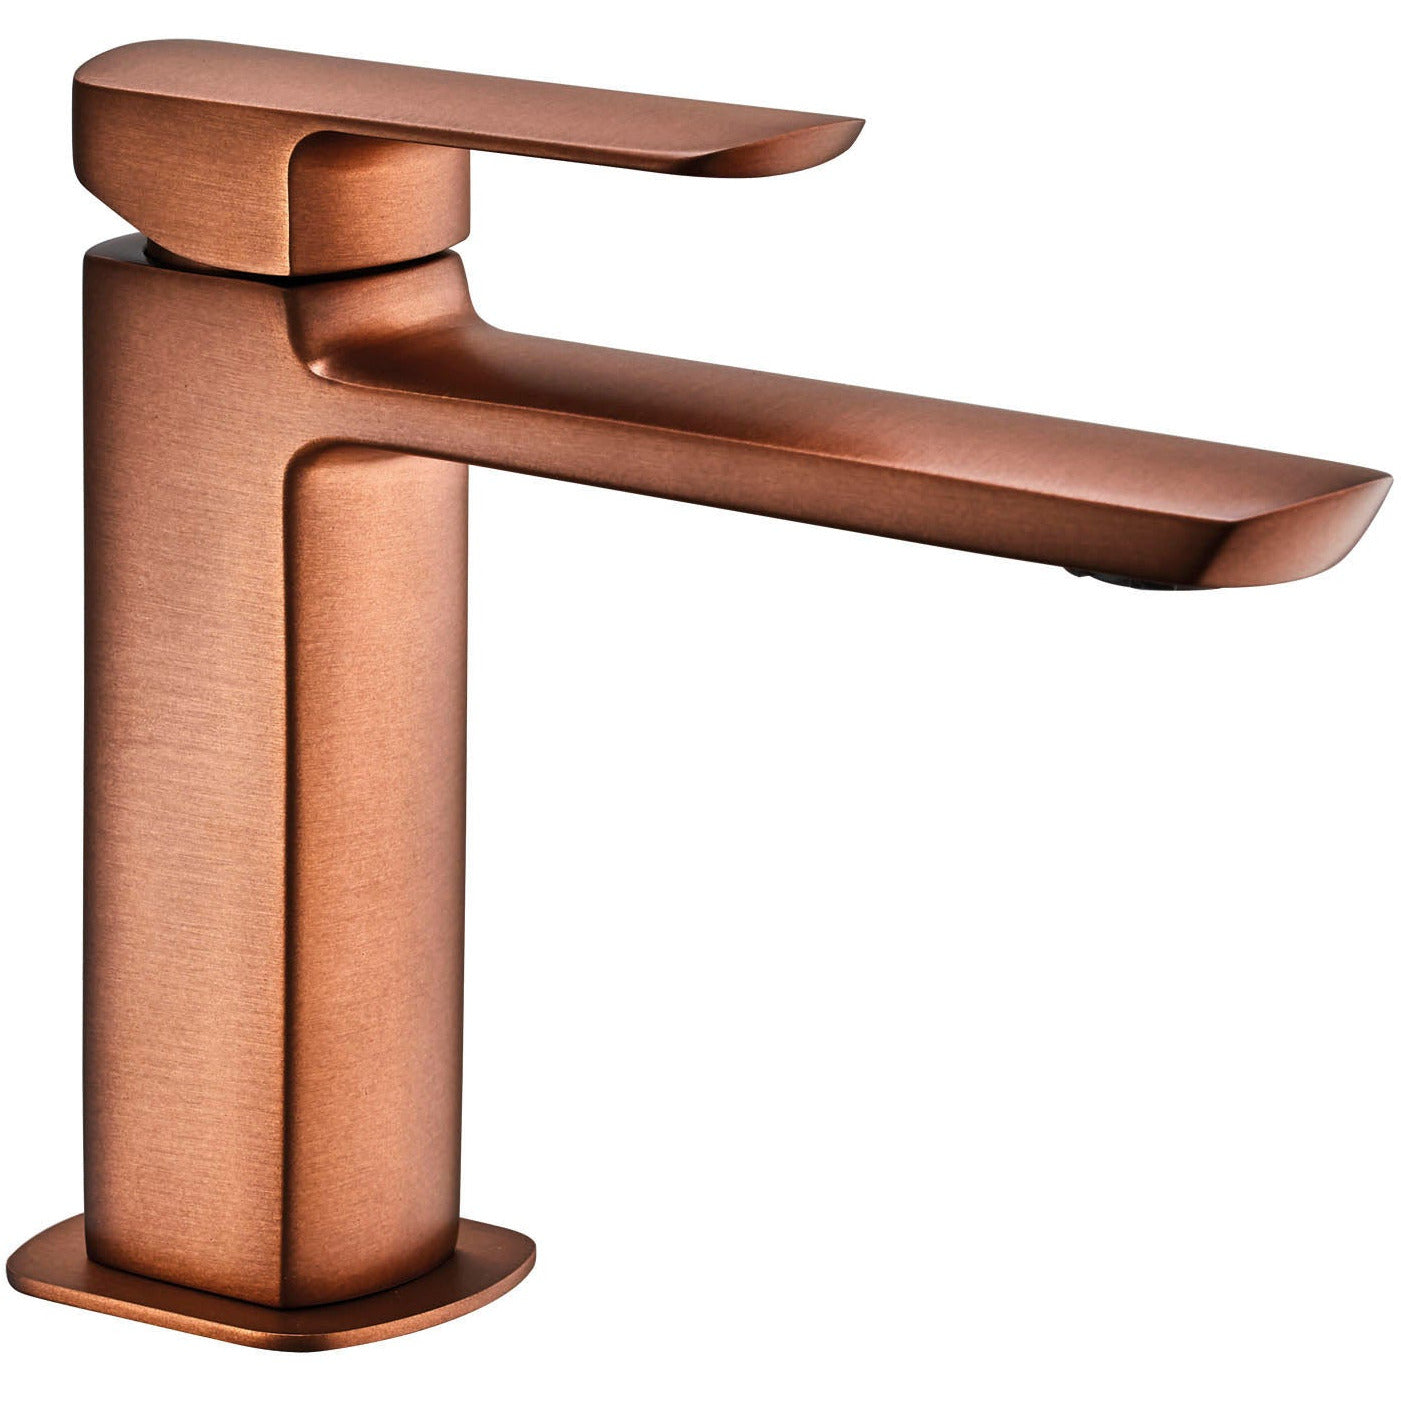 Lavabo faucet MIS single lever 563085-CC